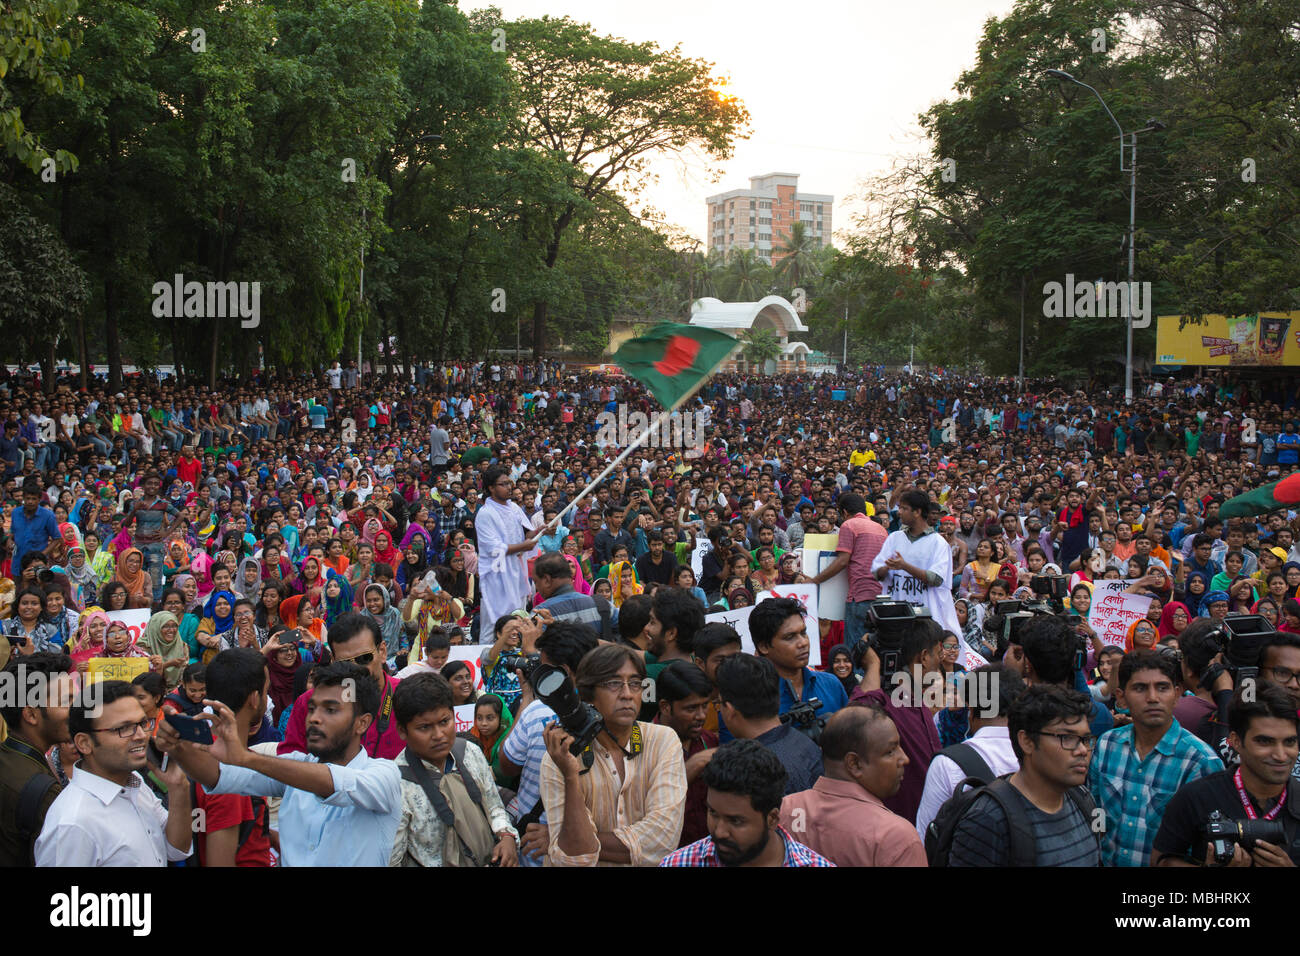 DHAKA, BANGLADESCH - 11. April: Bengalische Studenten für einen Protest gegen die Quoten für bestimmte Gruppen von Menschen in der Regierung Arbeitsplätze in Dhaka, Bangladesch, das am 11. April 2018 sammeln. Zehntausende Studenten demonstrierten in den Städten in Bangladesch am 11. April in einem der größten Proteste von Premierministerin Sheikh Hasina in ihren zehn Jahren an der Macht konfrontiert. Studenten gegen eine umstrittene Richtlinie, legt Regierung Jobs für spezielle Gruppen Massenprotesten selten in einem solchen Umfang in Bangladesch gesehen haben zu kämpfen. Credit: zakir Hossain chowdhury Zakir/Alamy leben Nachrichten Stockfoto